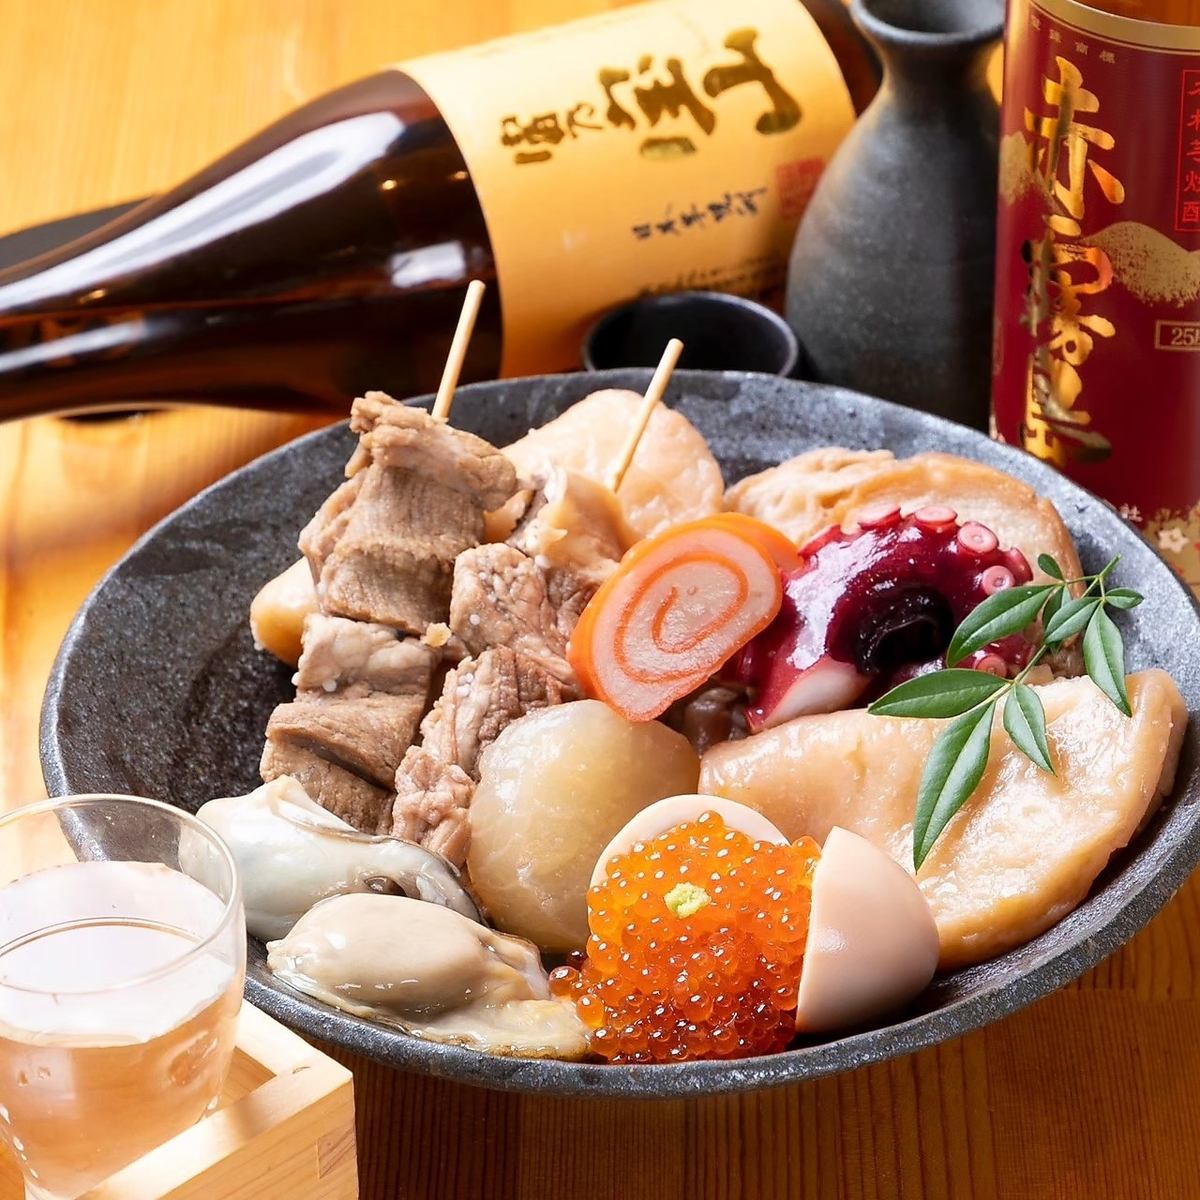 ◆NEW OPEN◆Fish menu + various Kanazawa specialties, enjoy oden◎